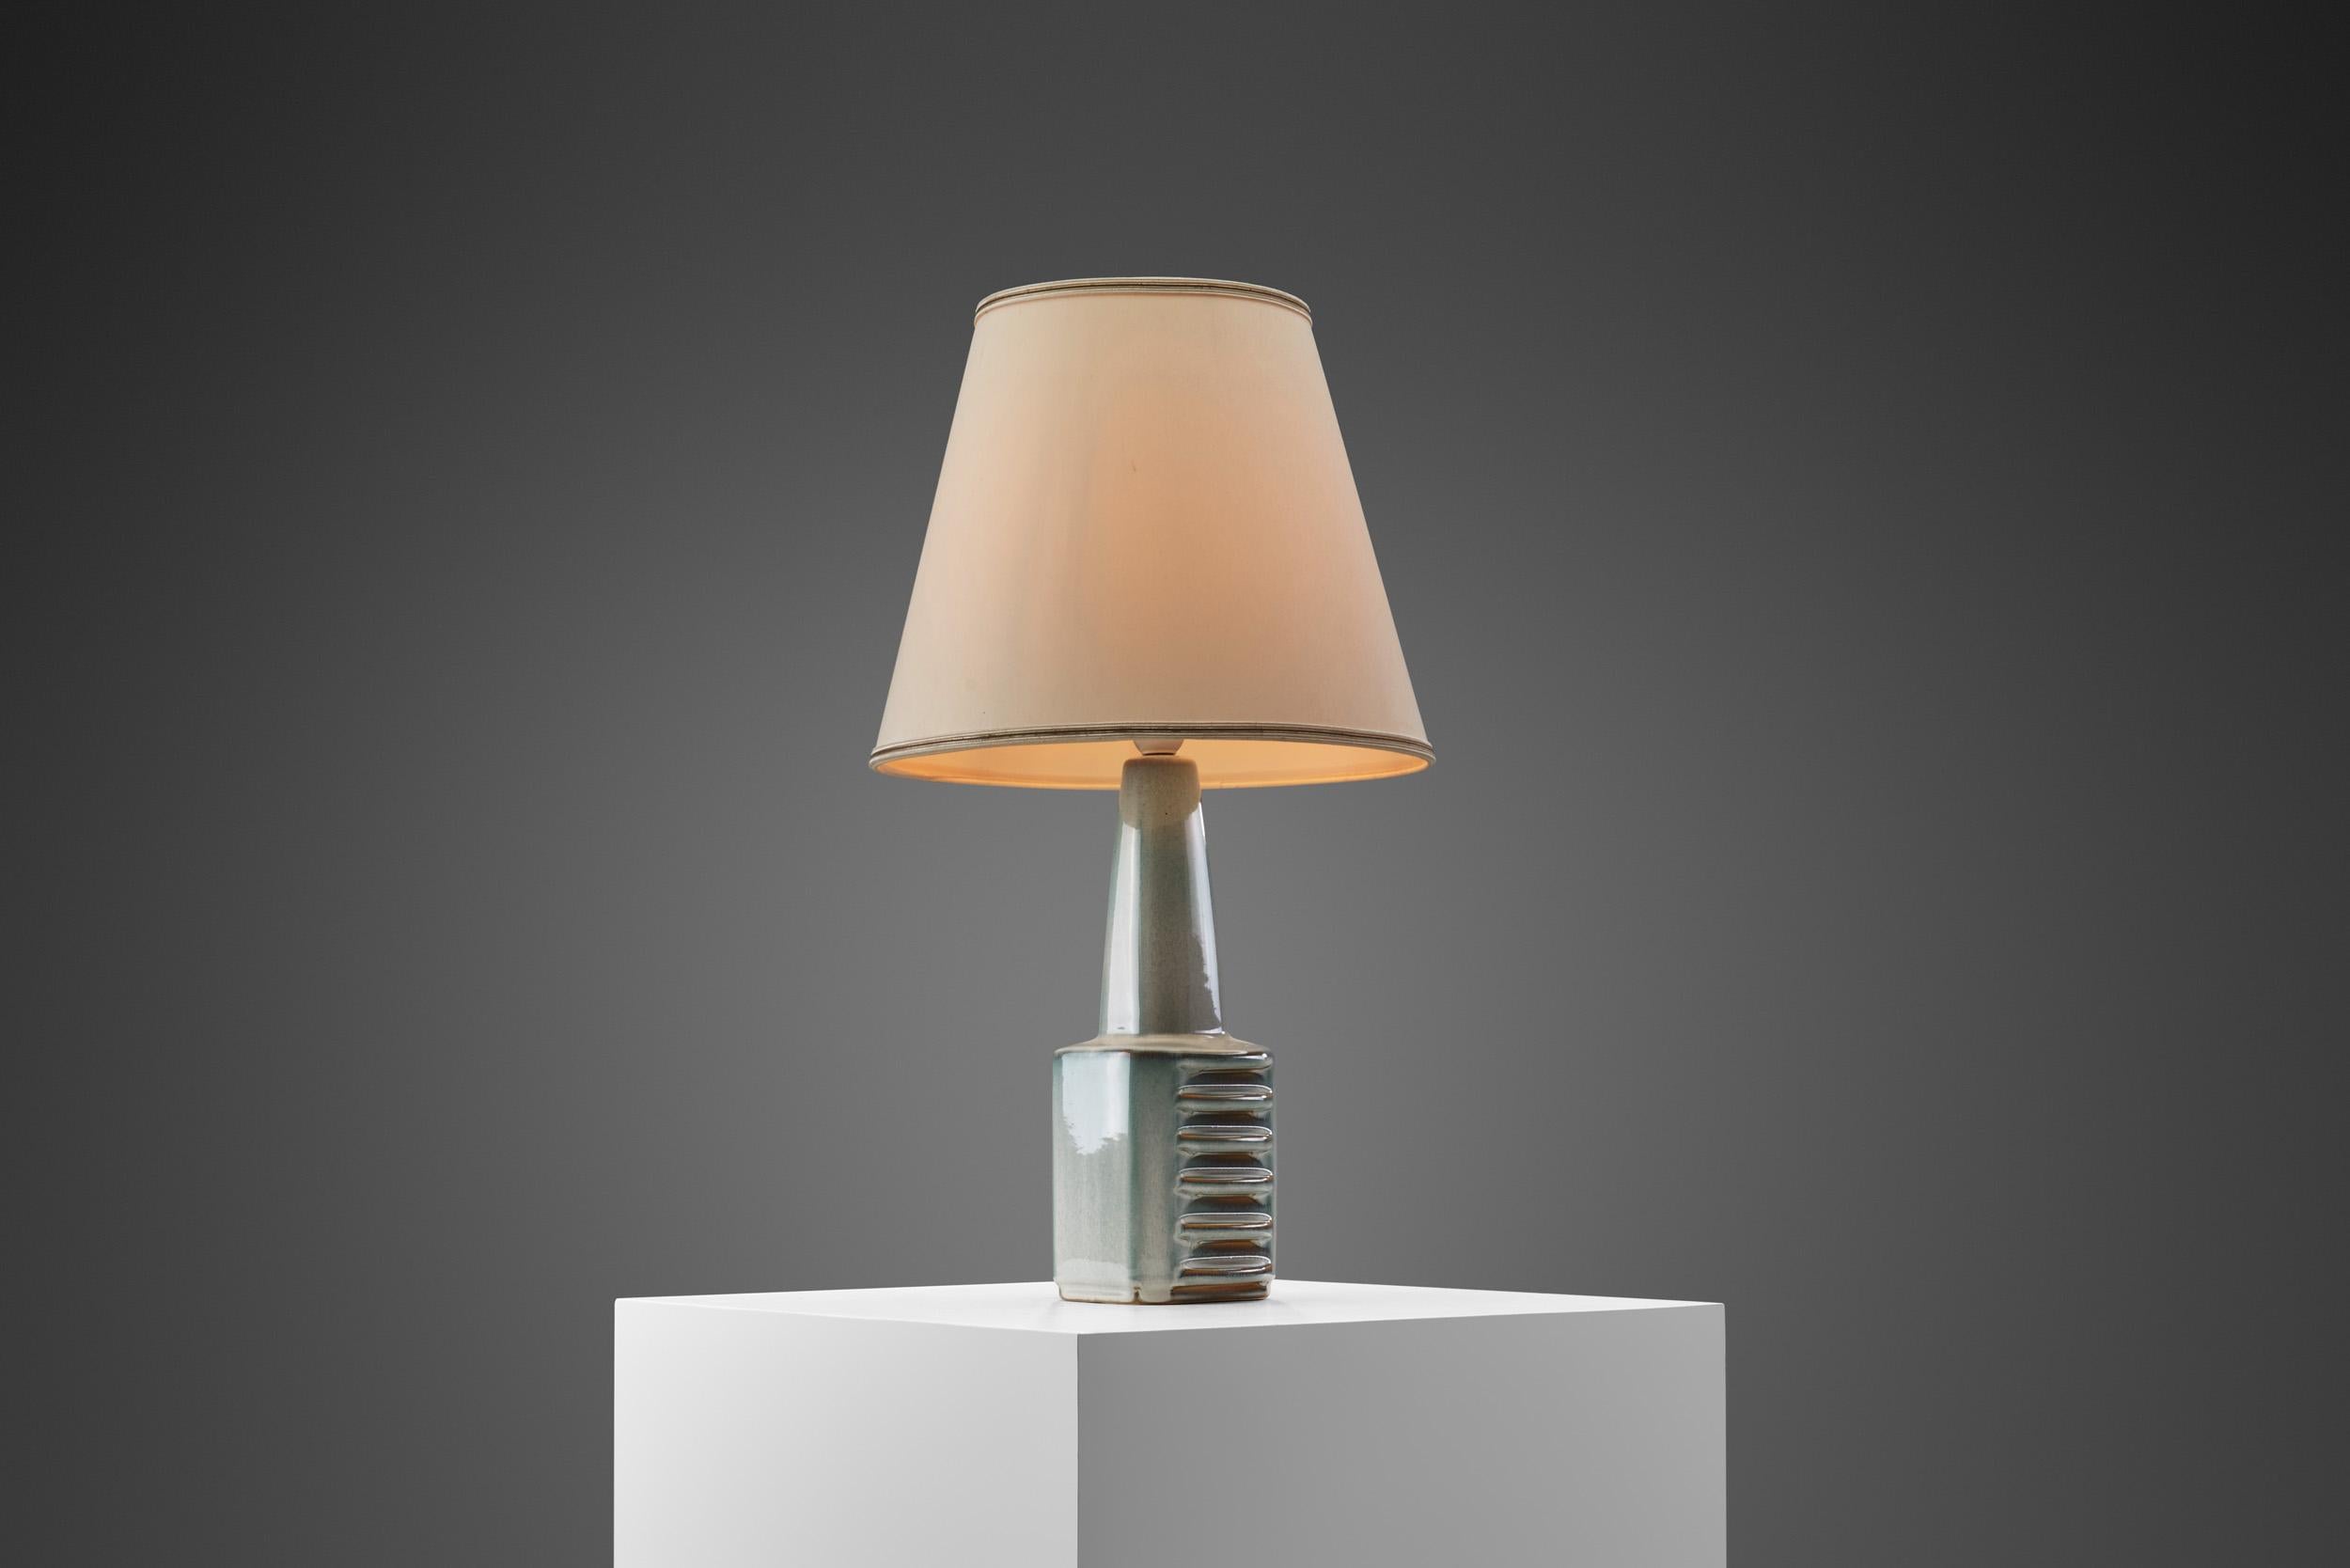 Cette lampe de table fabriquée à la main dans les années 1960 a été conçue par le brillant artiste danois Einar Johansen et produite par Søholm Stentøj (grès de Søholm). La manufacture était l'un des noms les plus anciens et les plus Rever de la